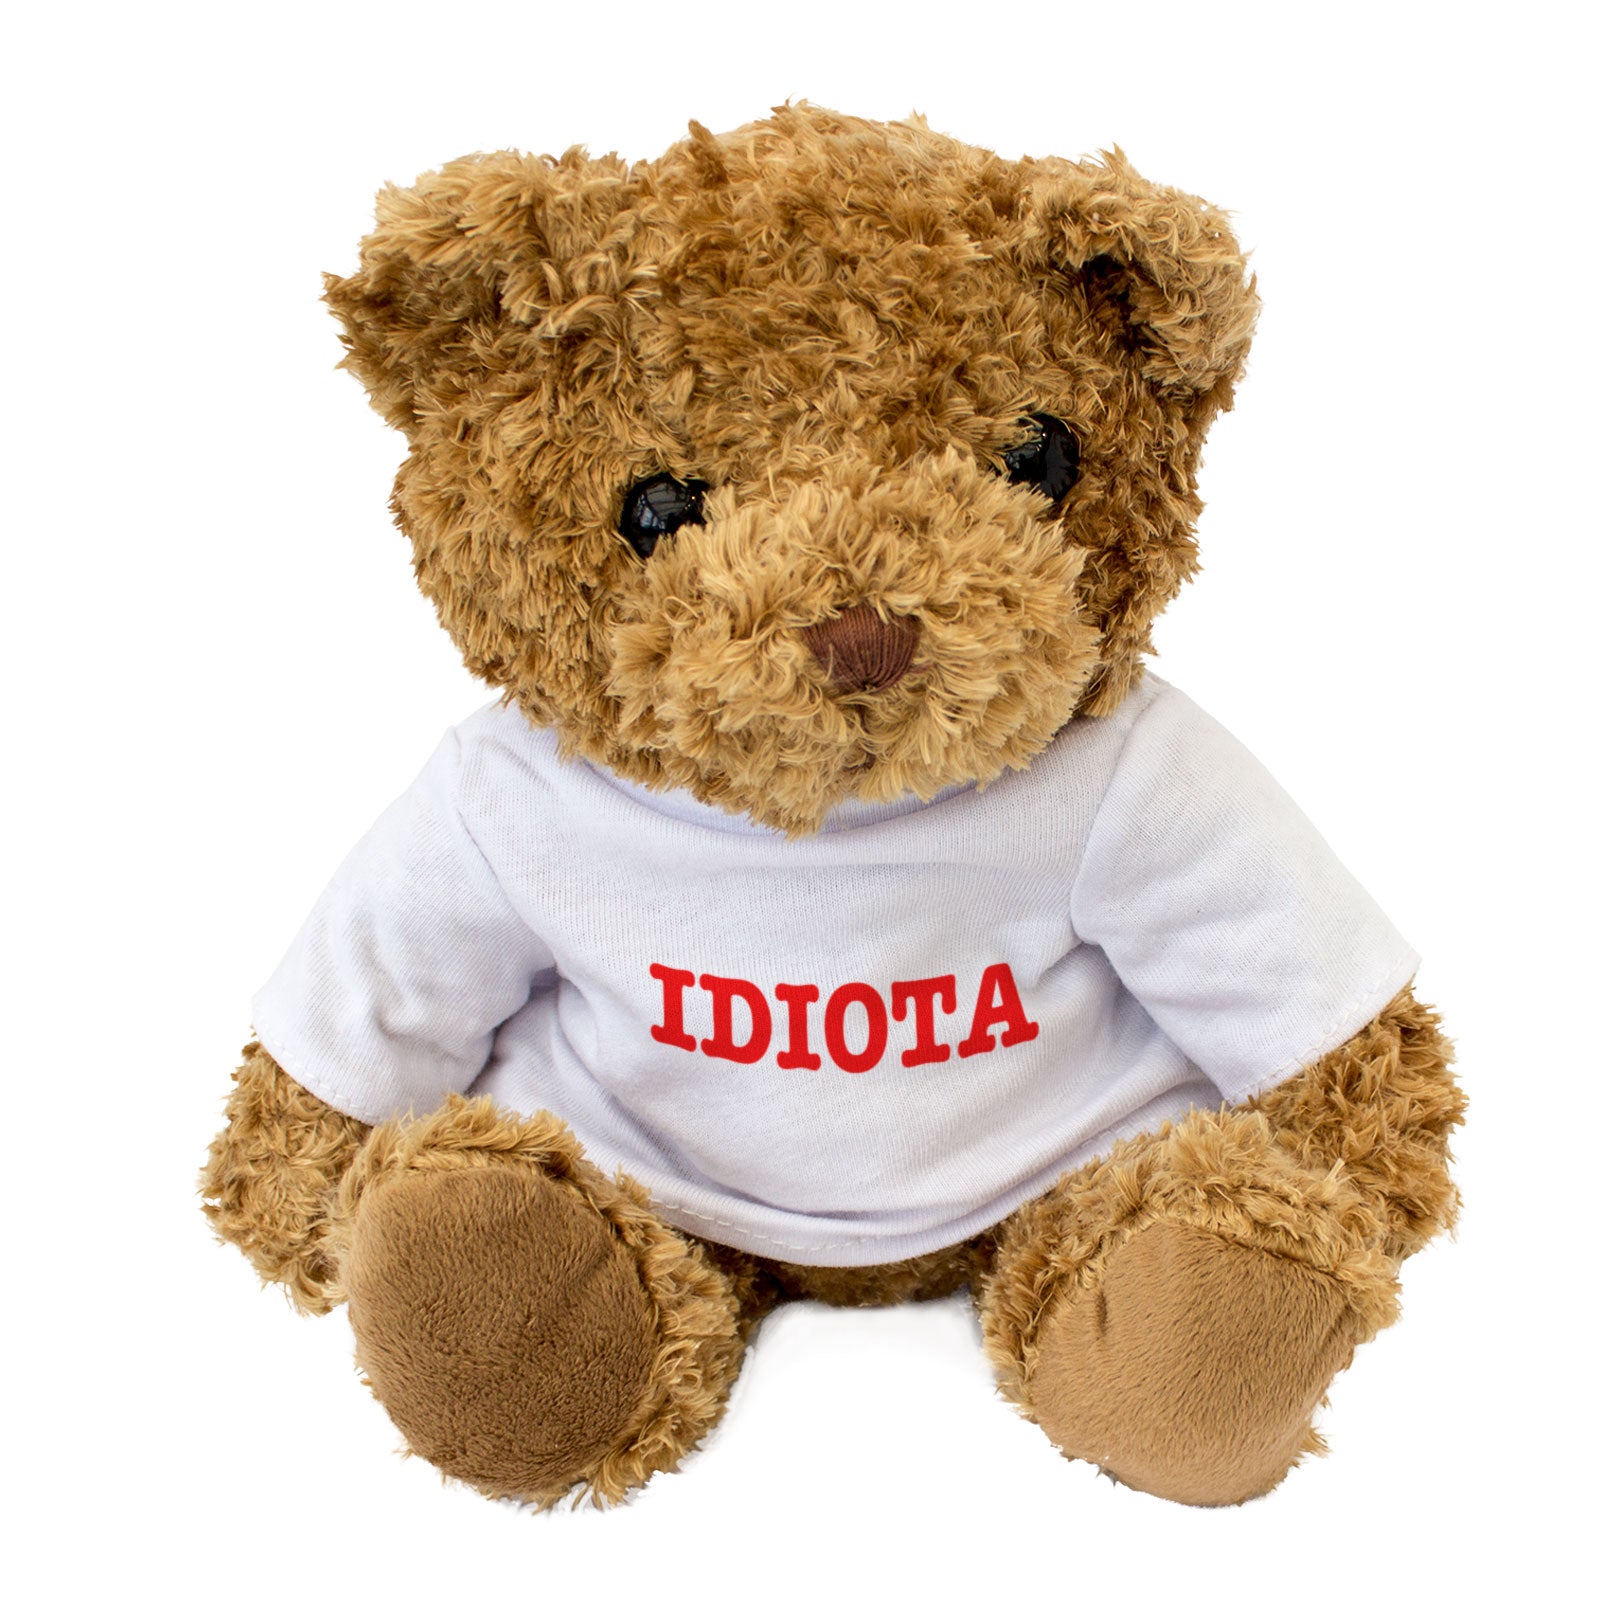 Idiota - Teddy Bear